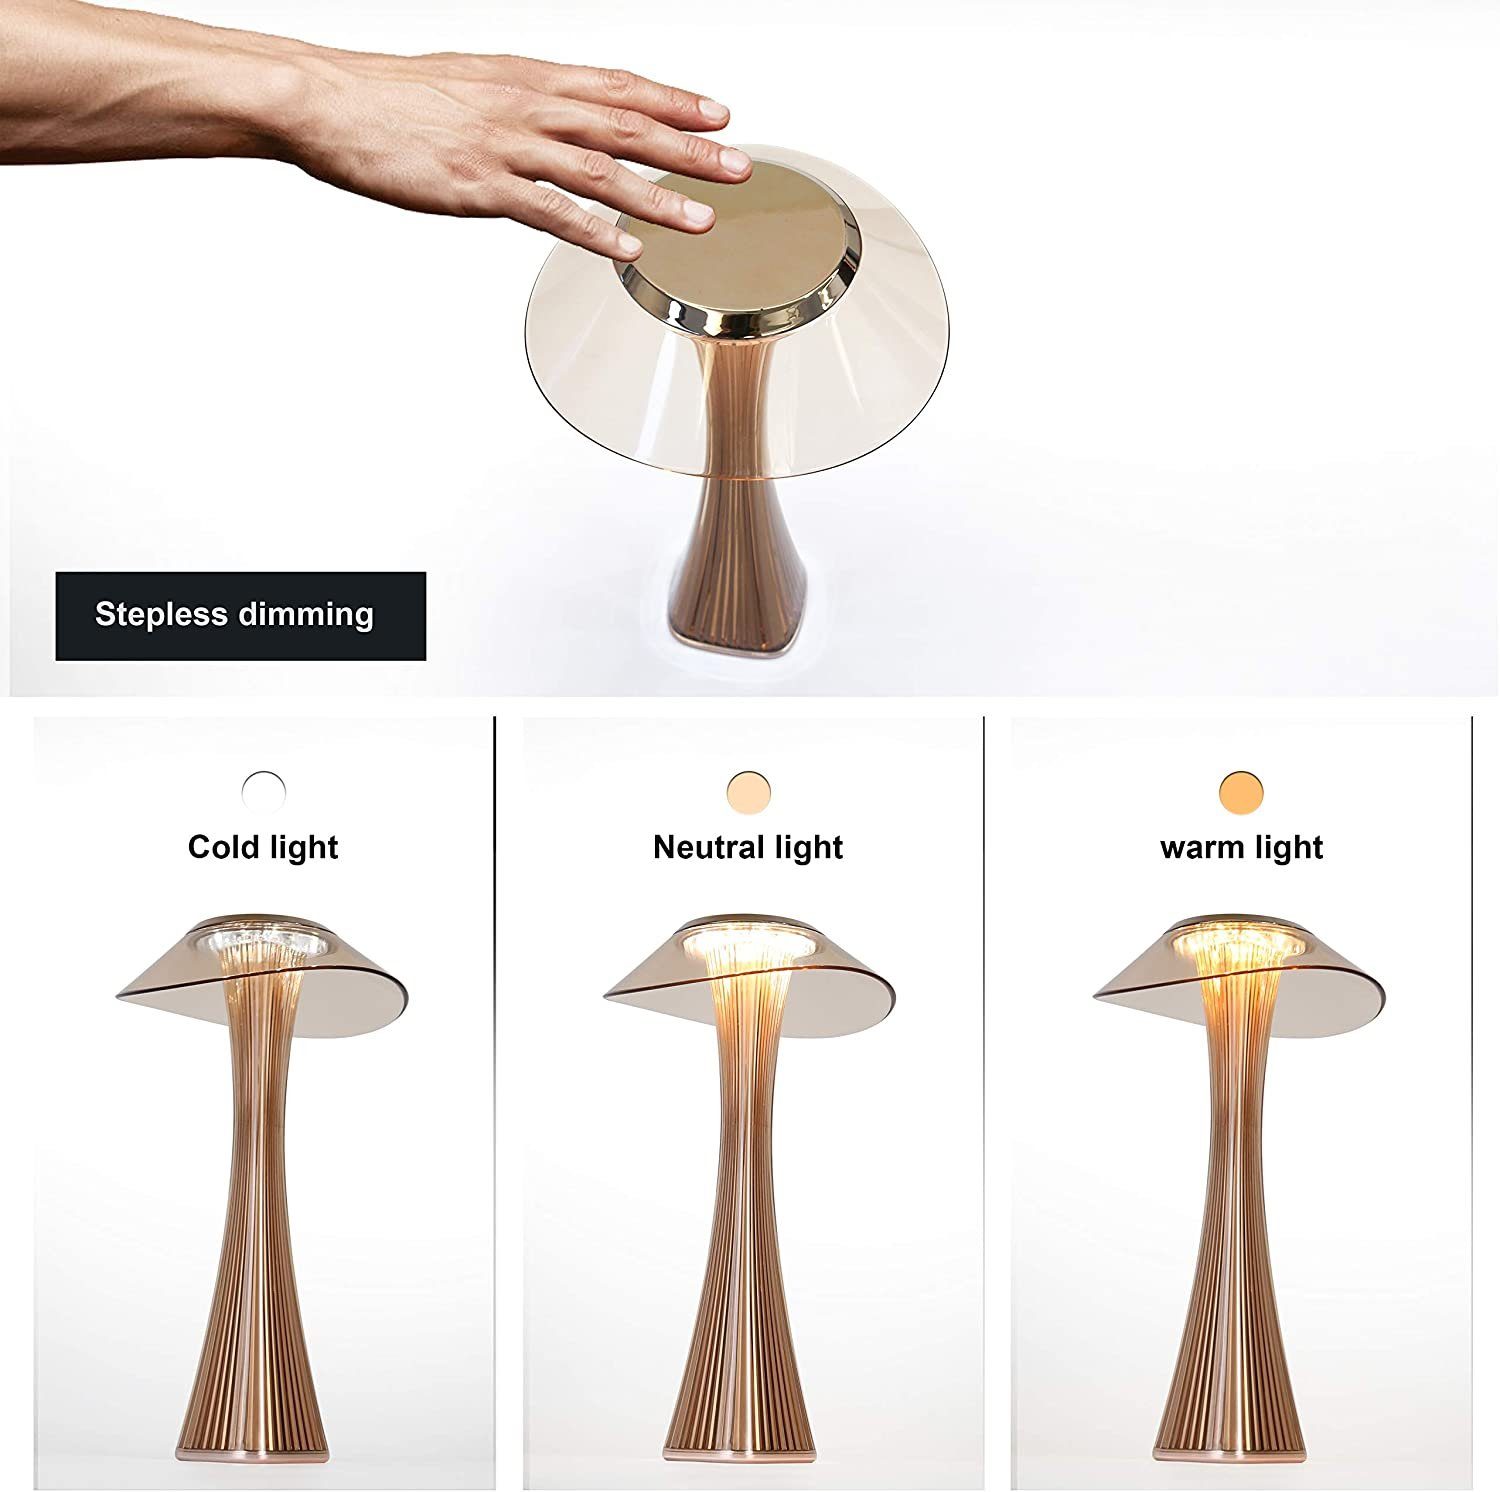 Tischlampe Touch, Tischleuchte Lichtsteuerung Tragbare Dimmbar Nettlife